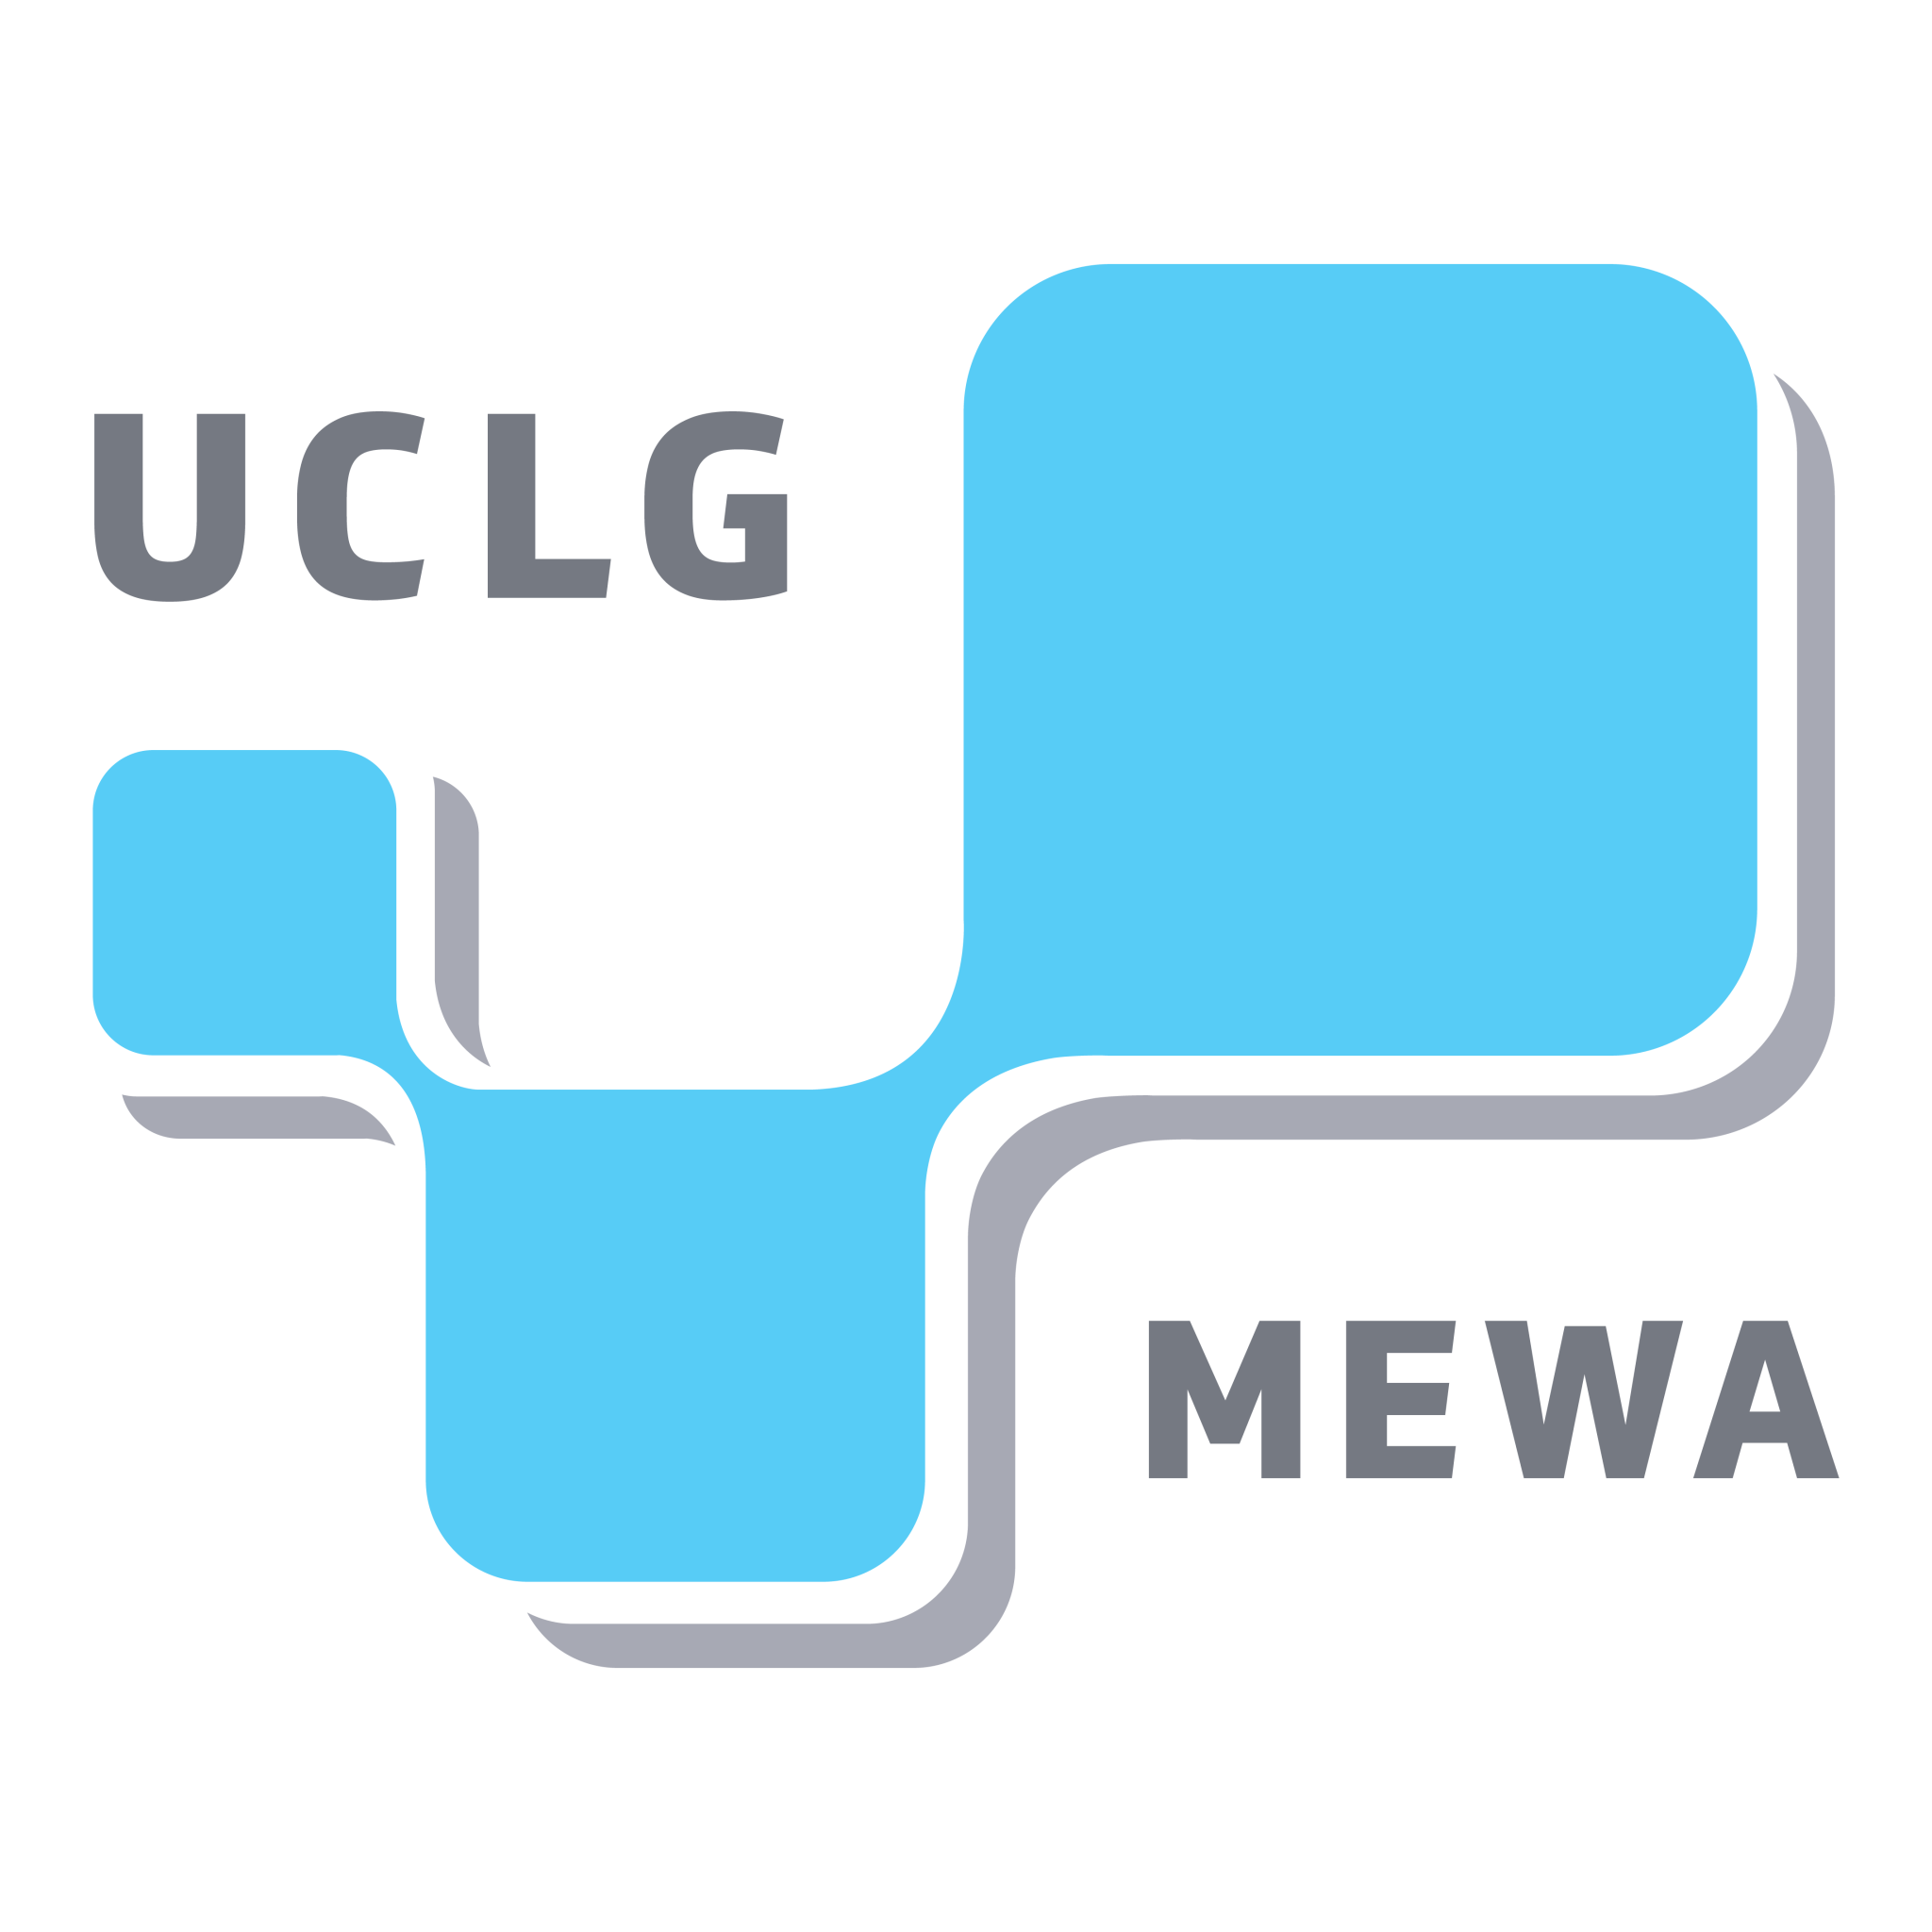 CGLU-MEWA (Cités et Gouvernements Locaux Unis Région Moyen-Orient et Asie de l'Ouest)